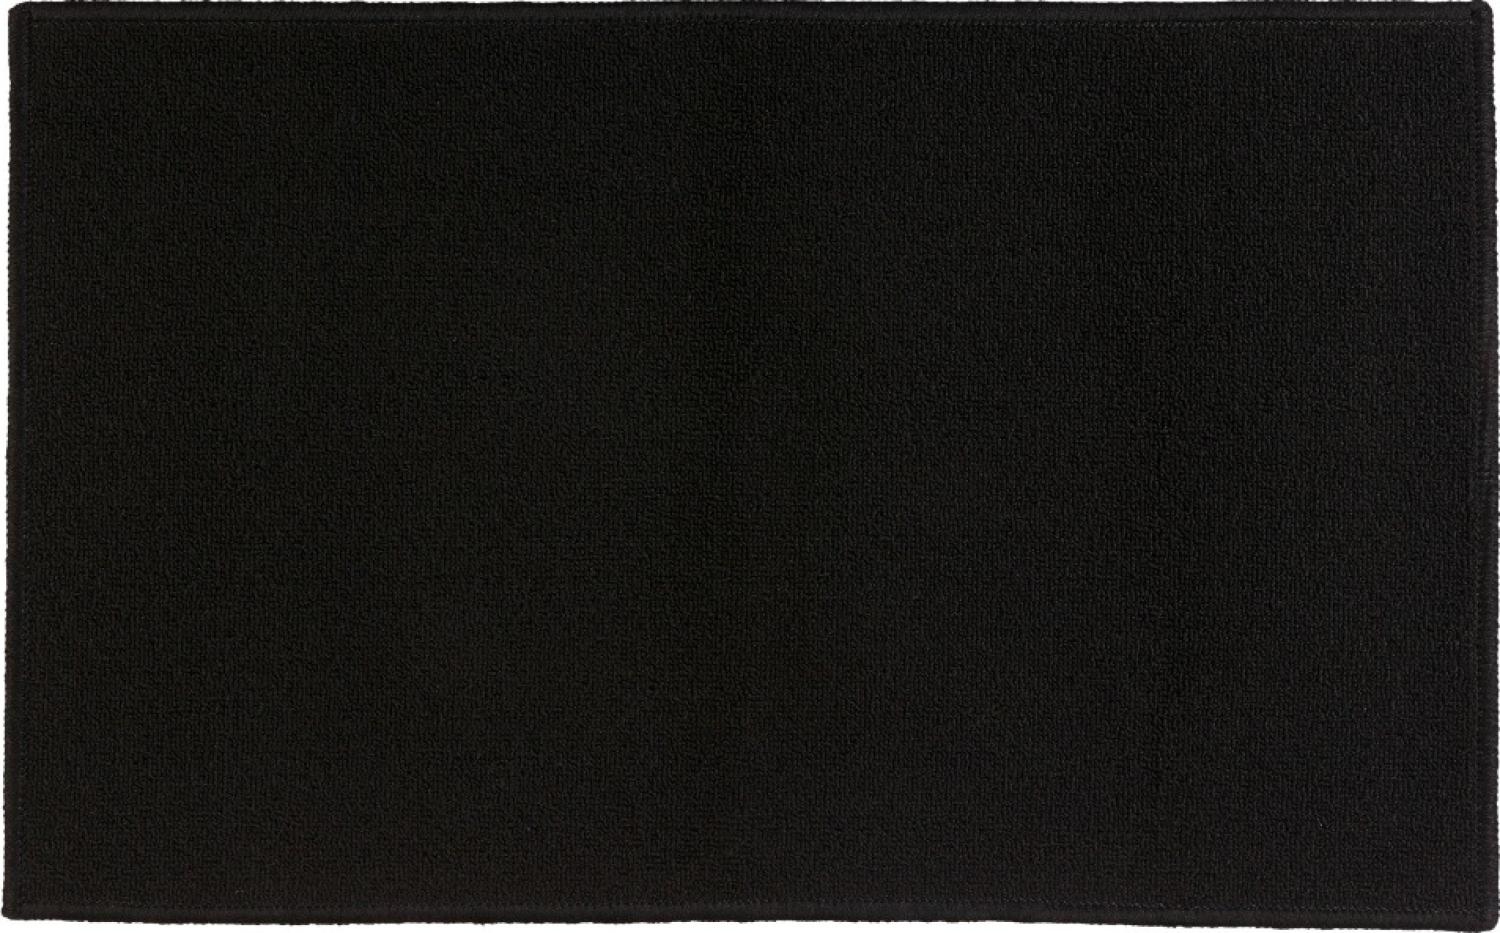 Badteppich TAPIS UNI, 50x80 cm, schwarz Bild 1